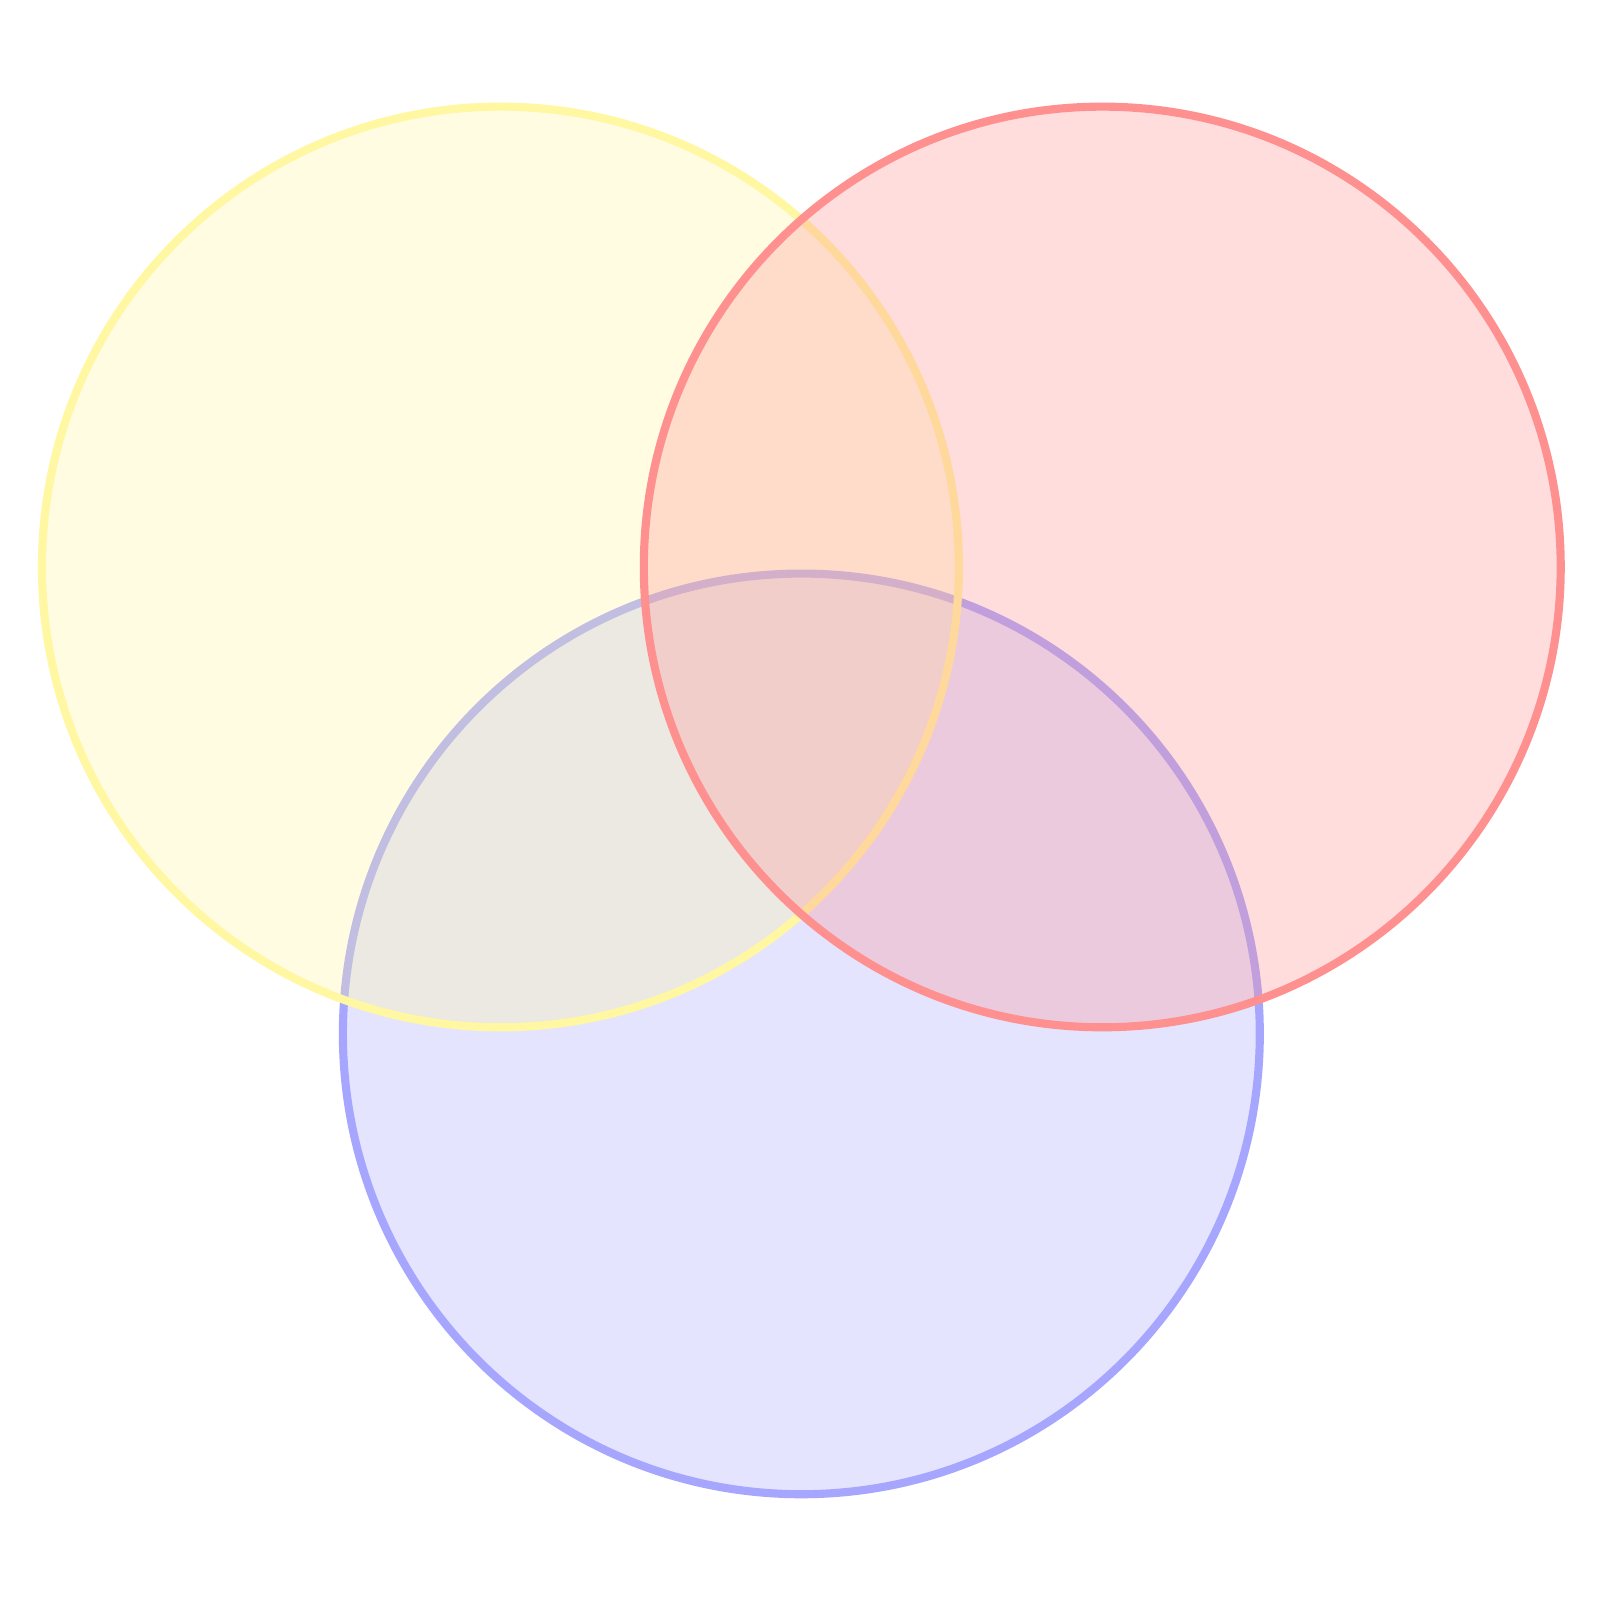 venndiagram med tre cirklar